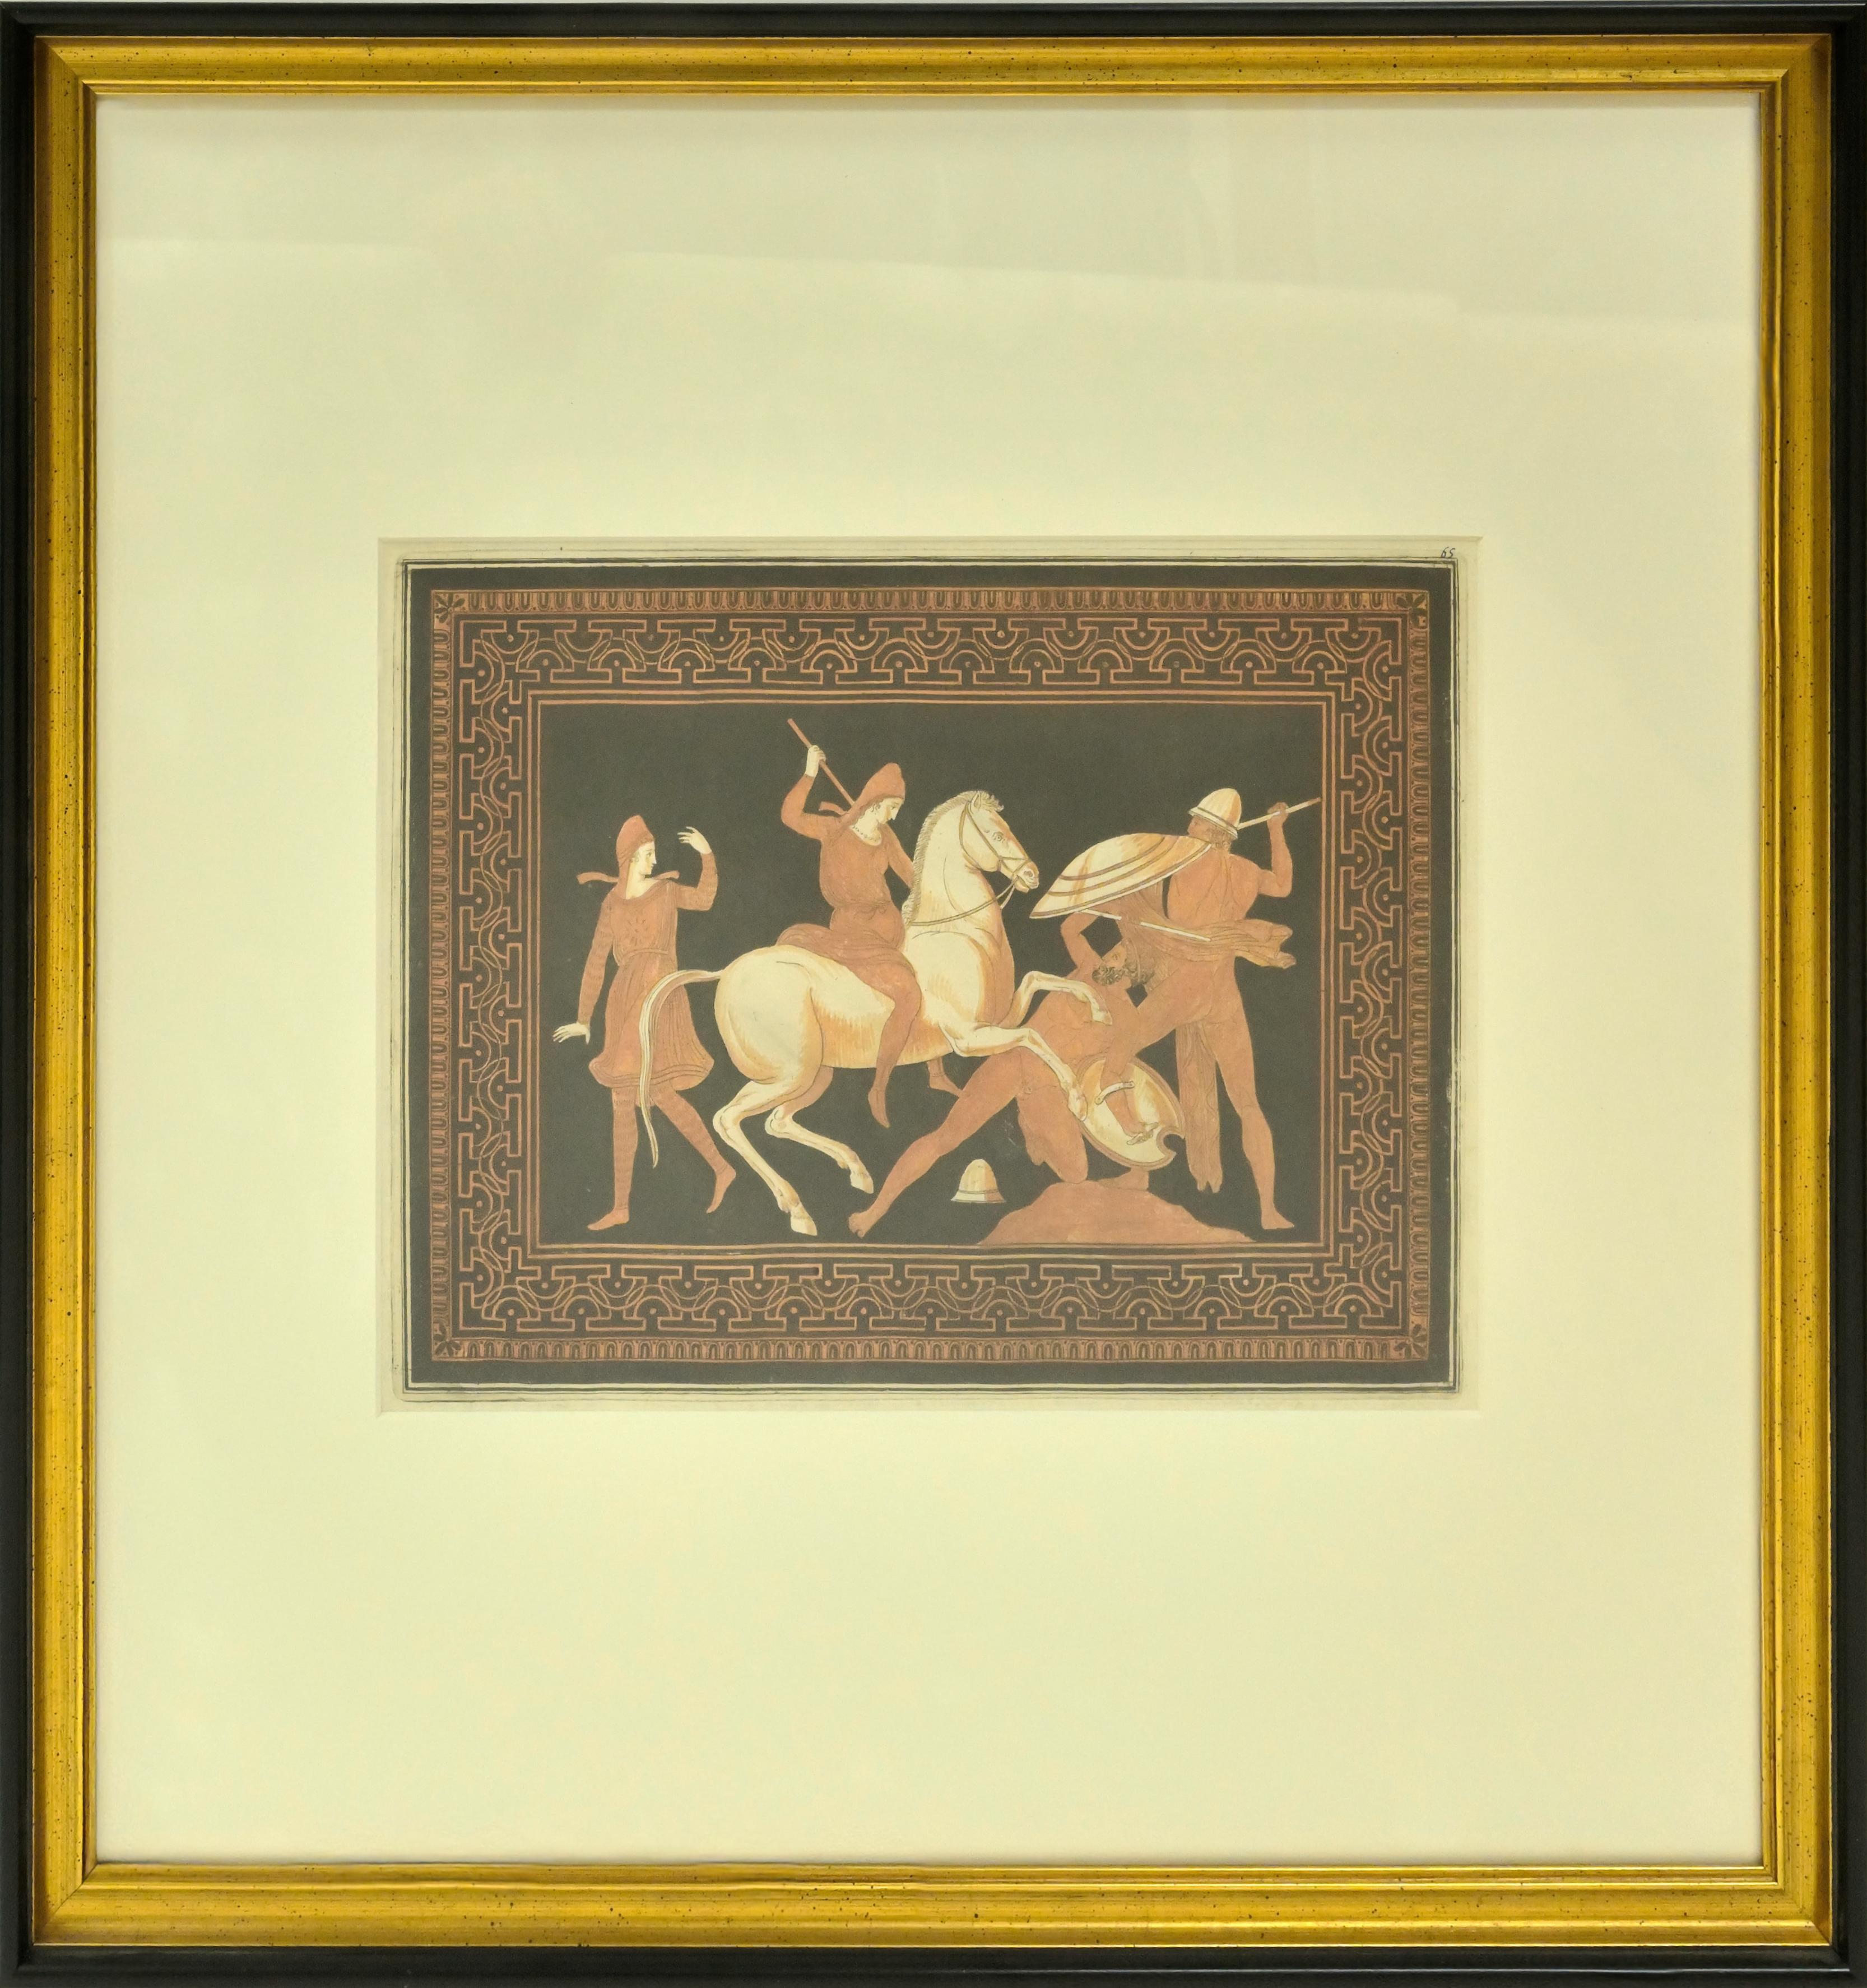 Gravures coloriées à la main, extraites des Antiquités Etrusques, Grecques et Romaines de l'in-folio de Lord Hamilton (1766-1776). La collection de vases anciens d'Hamilton a été rassemblée par lui après sa nomination à la cour de Naples en 1764, a